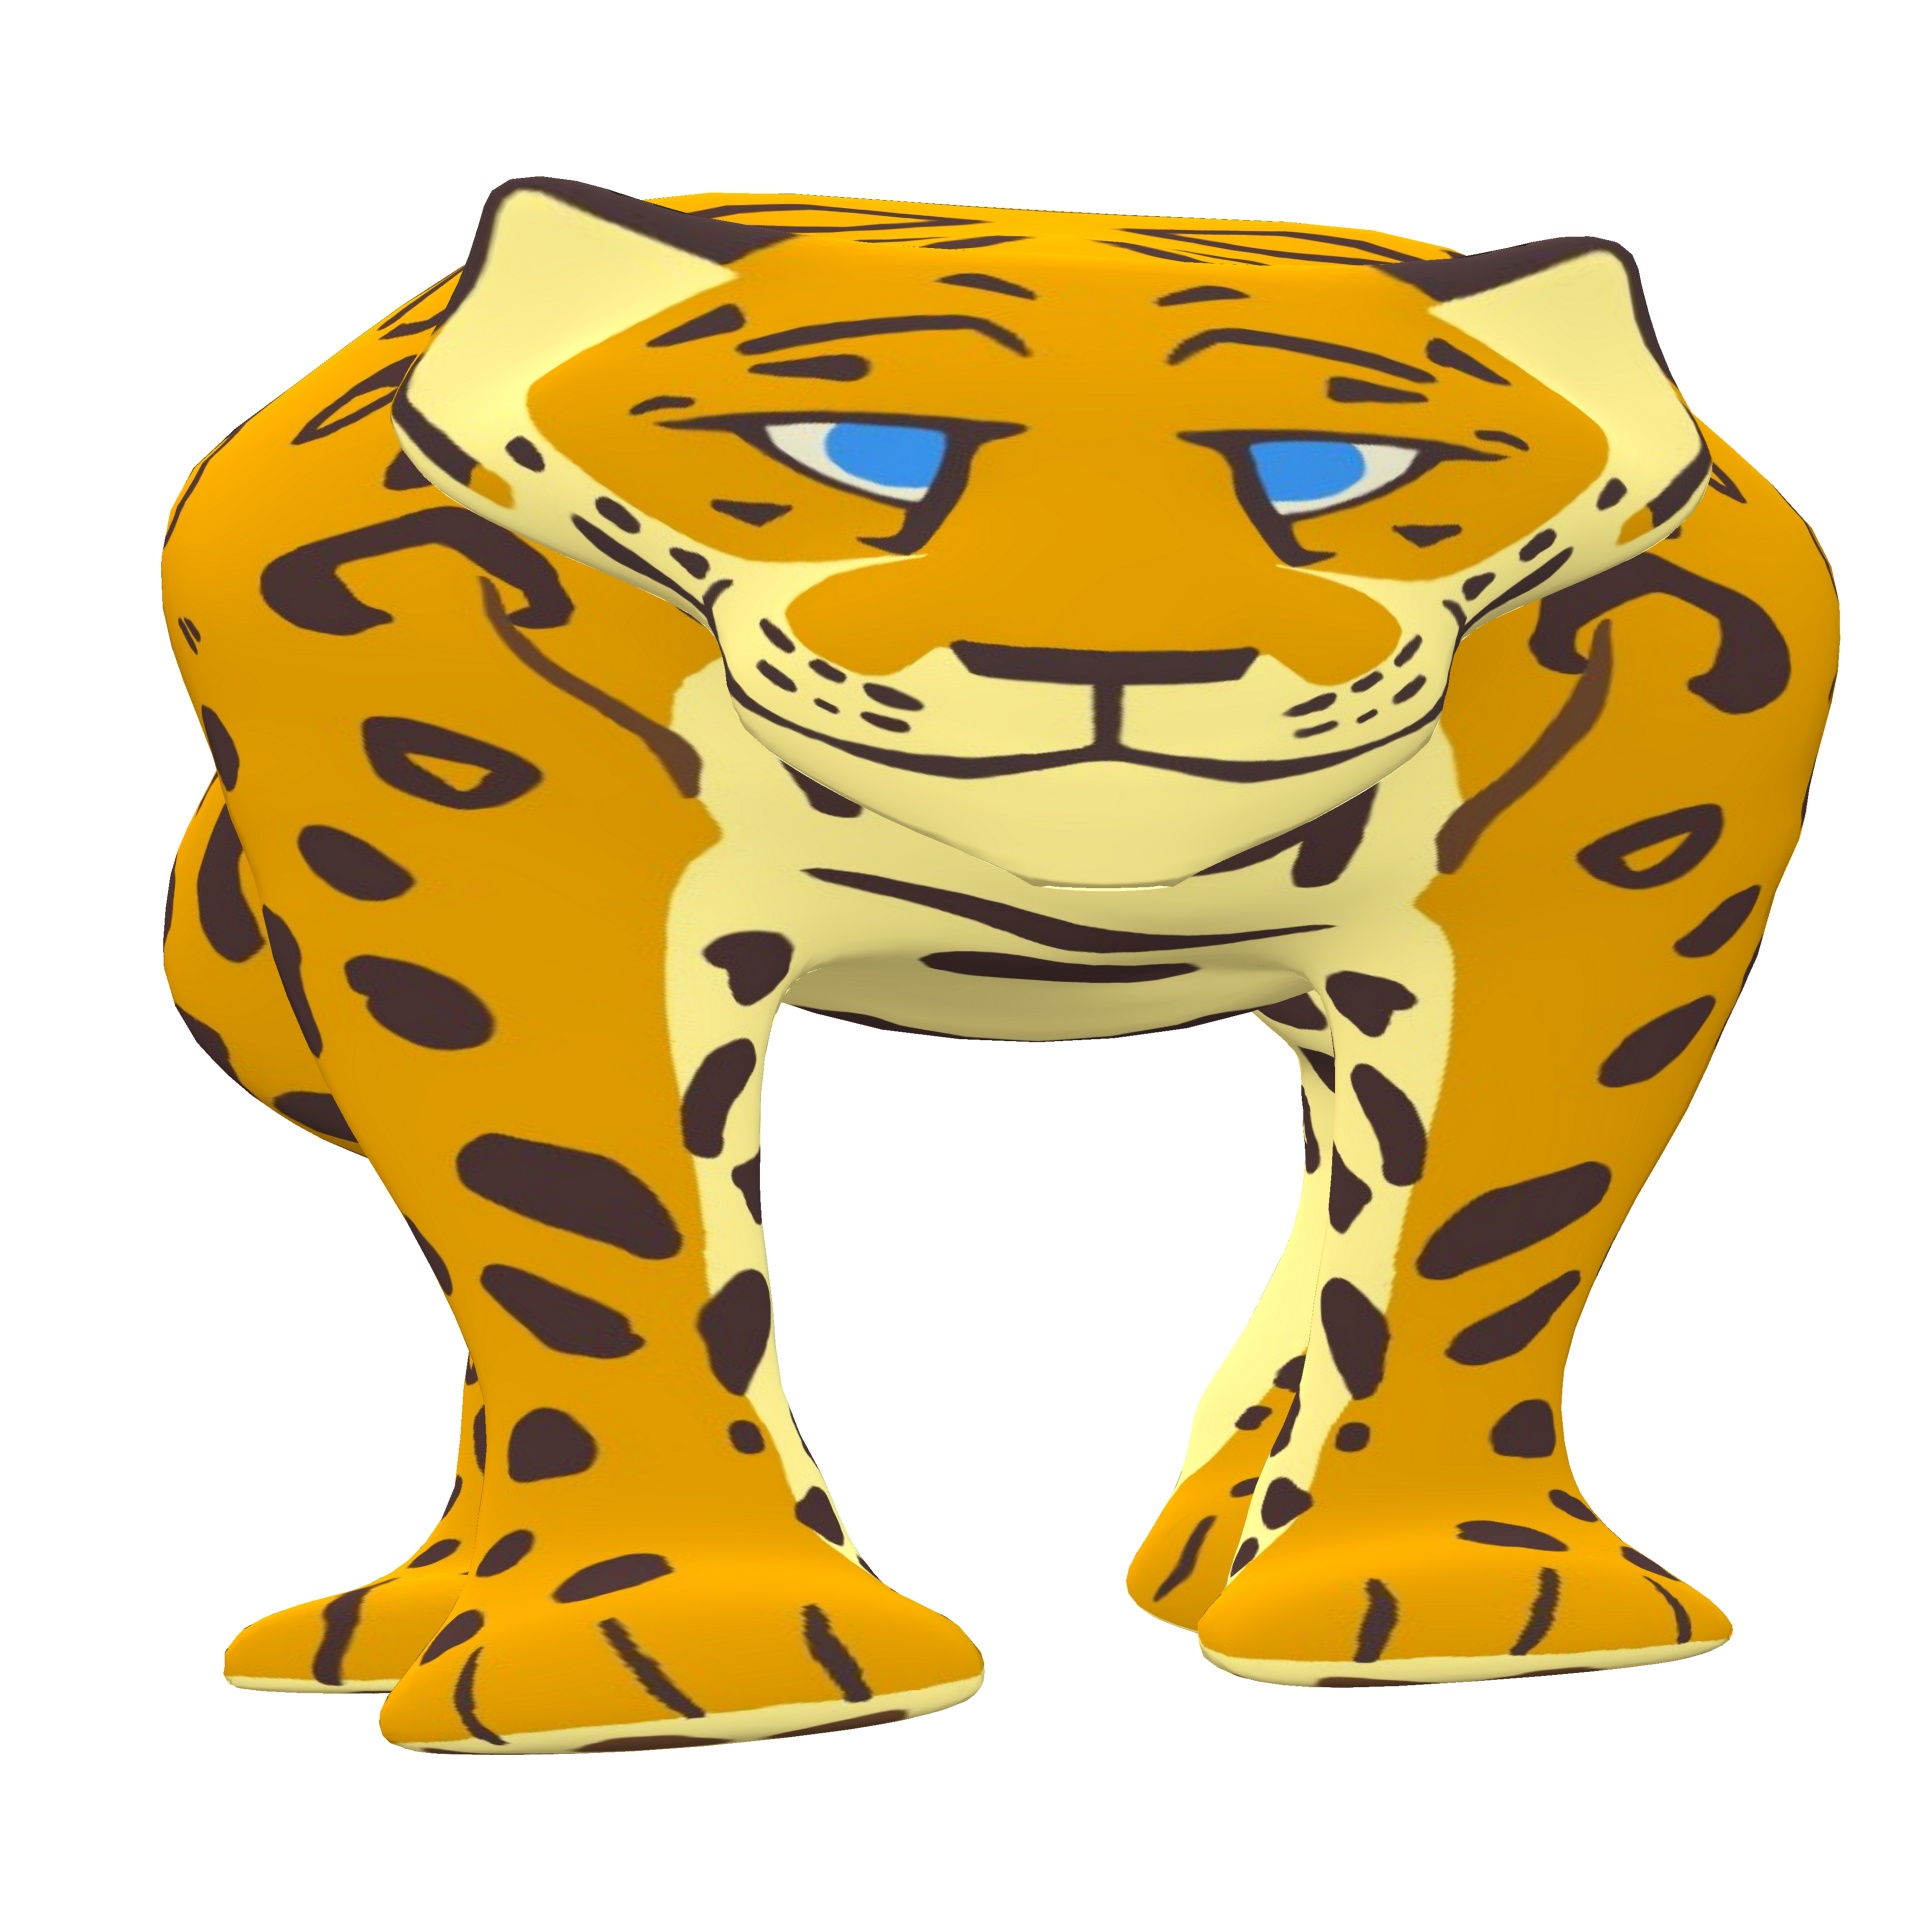 jaguar cartoon isolated on white background